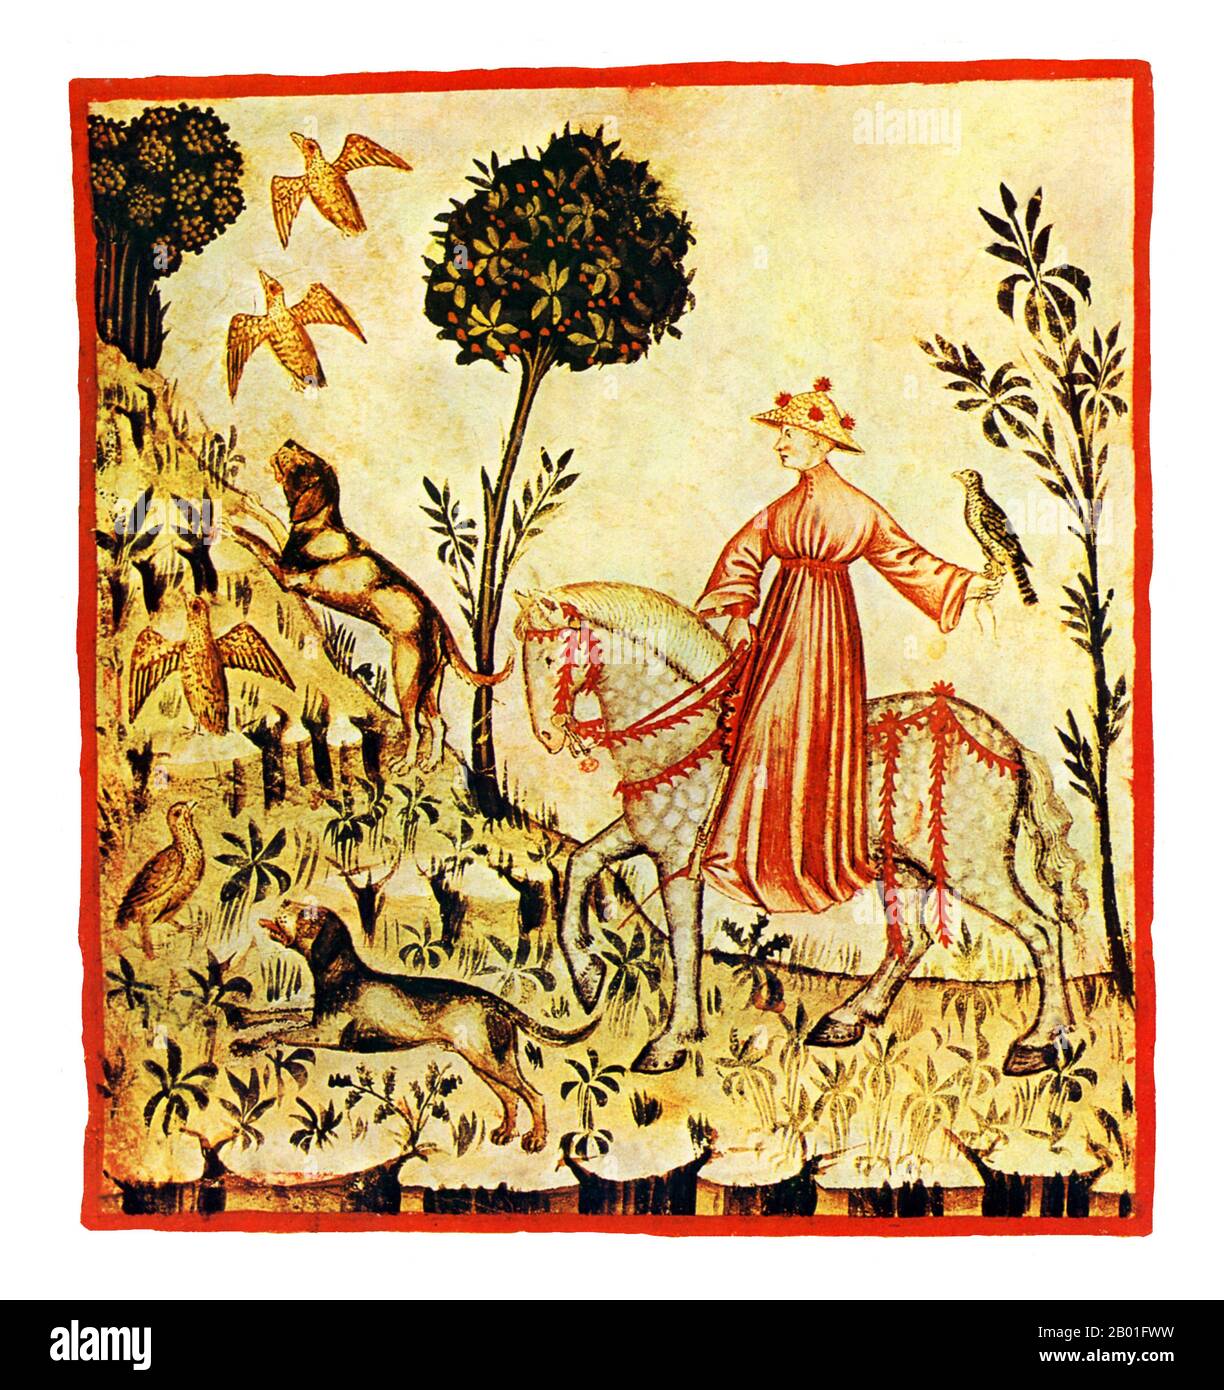 Irak/Italie: Perdrix (Perdices). Illustration de Taqwim al-sihha d'Ibn Butlan, ou « Maintenance of Health » (Bagdad, 11th siècle), publiée en Italie sous le nom de The Tacuinum Sanitatis, 14th siècle. Le Tacuinum (parfois Taccuinum) Sanitatis est un manuel médiéval sur la santé et le bien-être, basé sur le Taqwim al-sihha تقويم الصحة ('Maintenance de la santé'), un traité médical arabe du XIe siècle par Ibn Butlan de Bagdad. Ibn Butlân est un médecin chrétien né à Bagdad et décédé en 1068. Banque D'Images